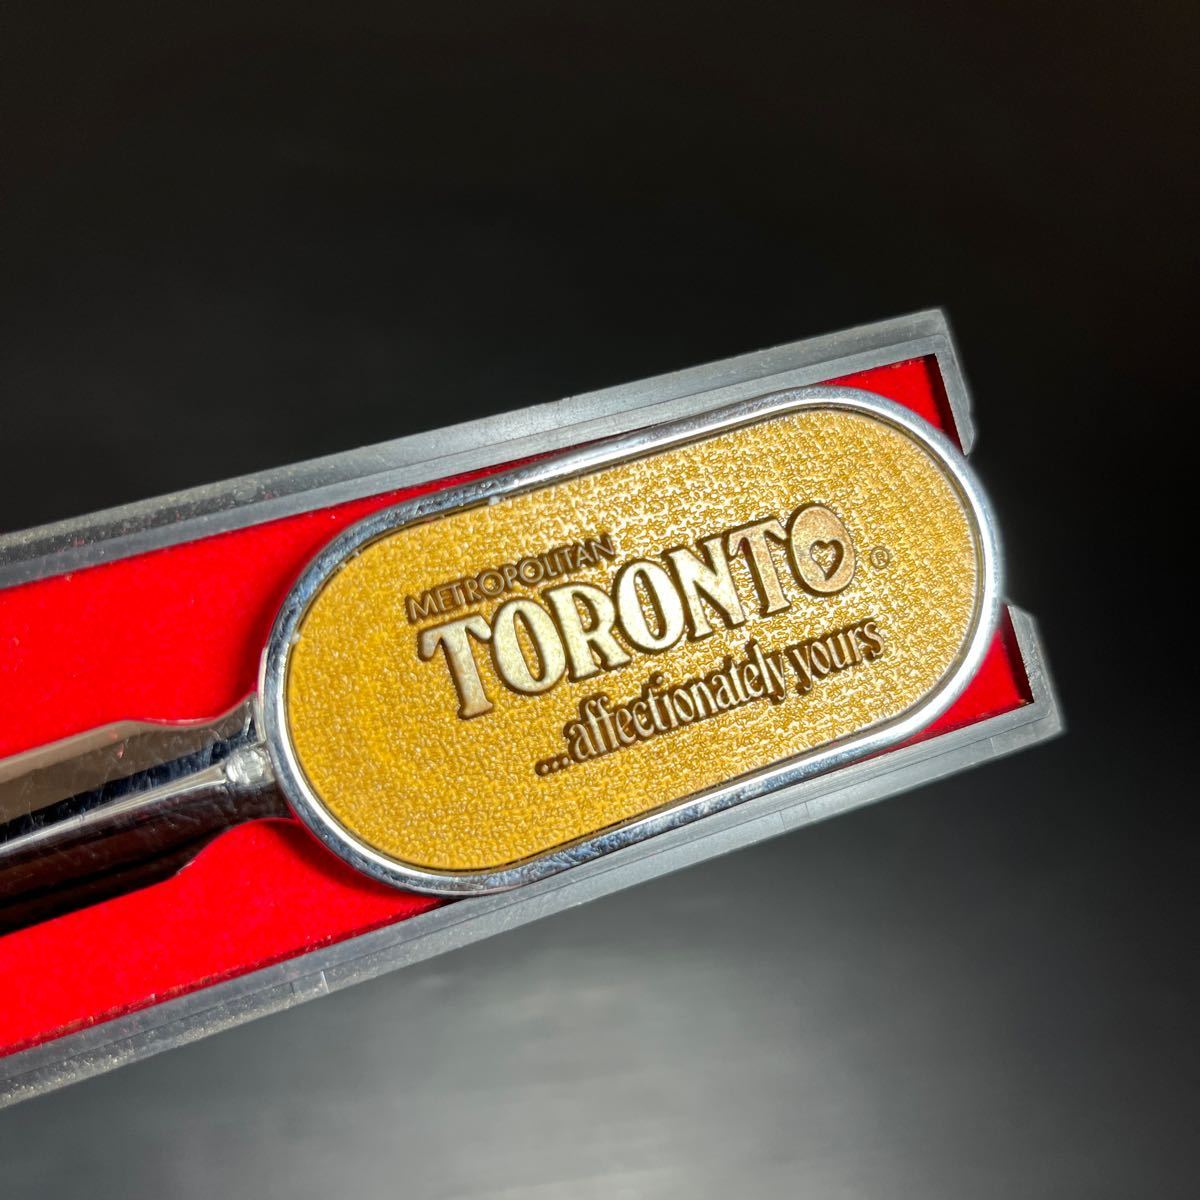  paper-knife Toronto Toronto City hole sliding knife Canada made metropolitan 